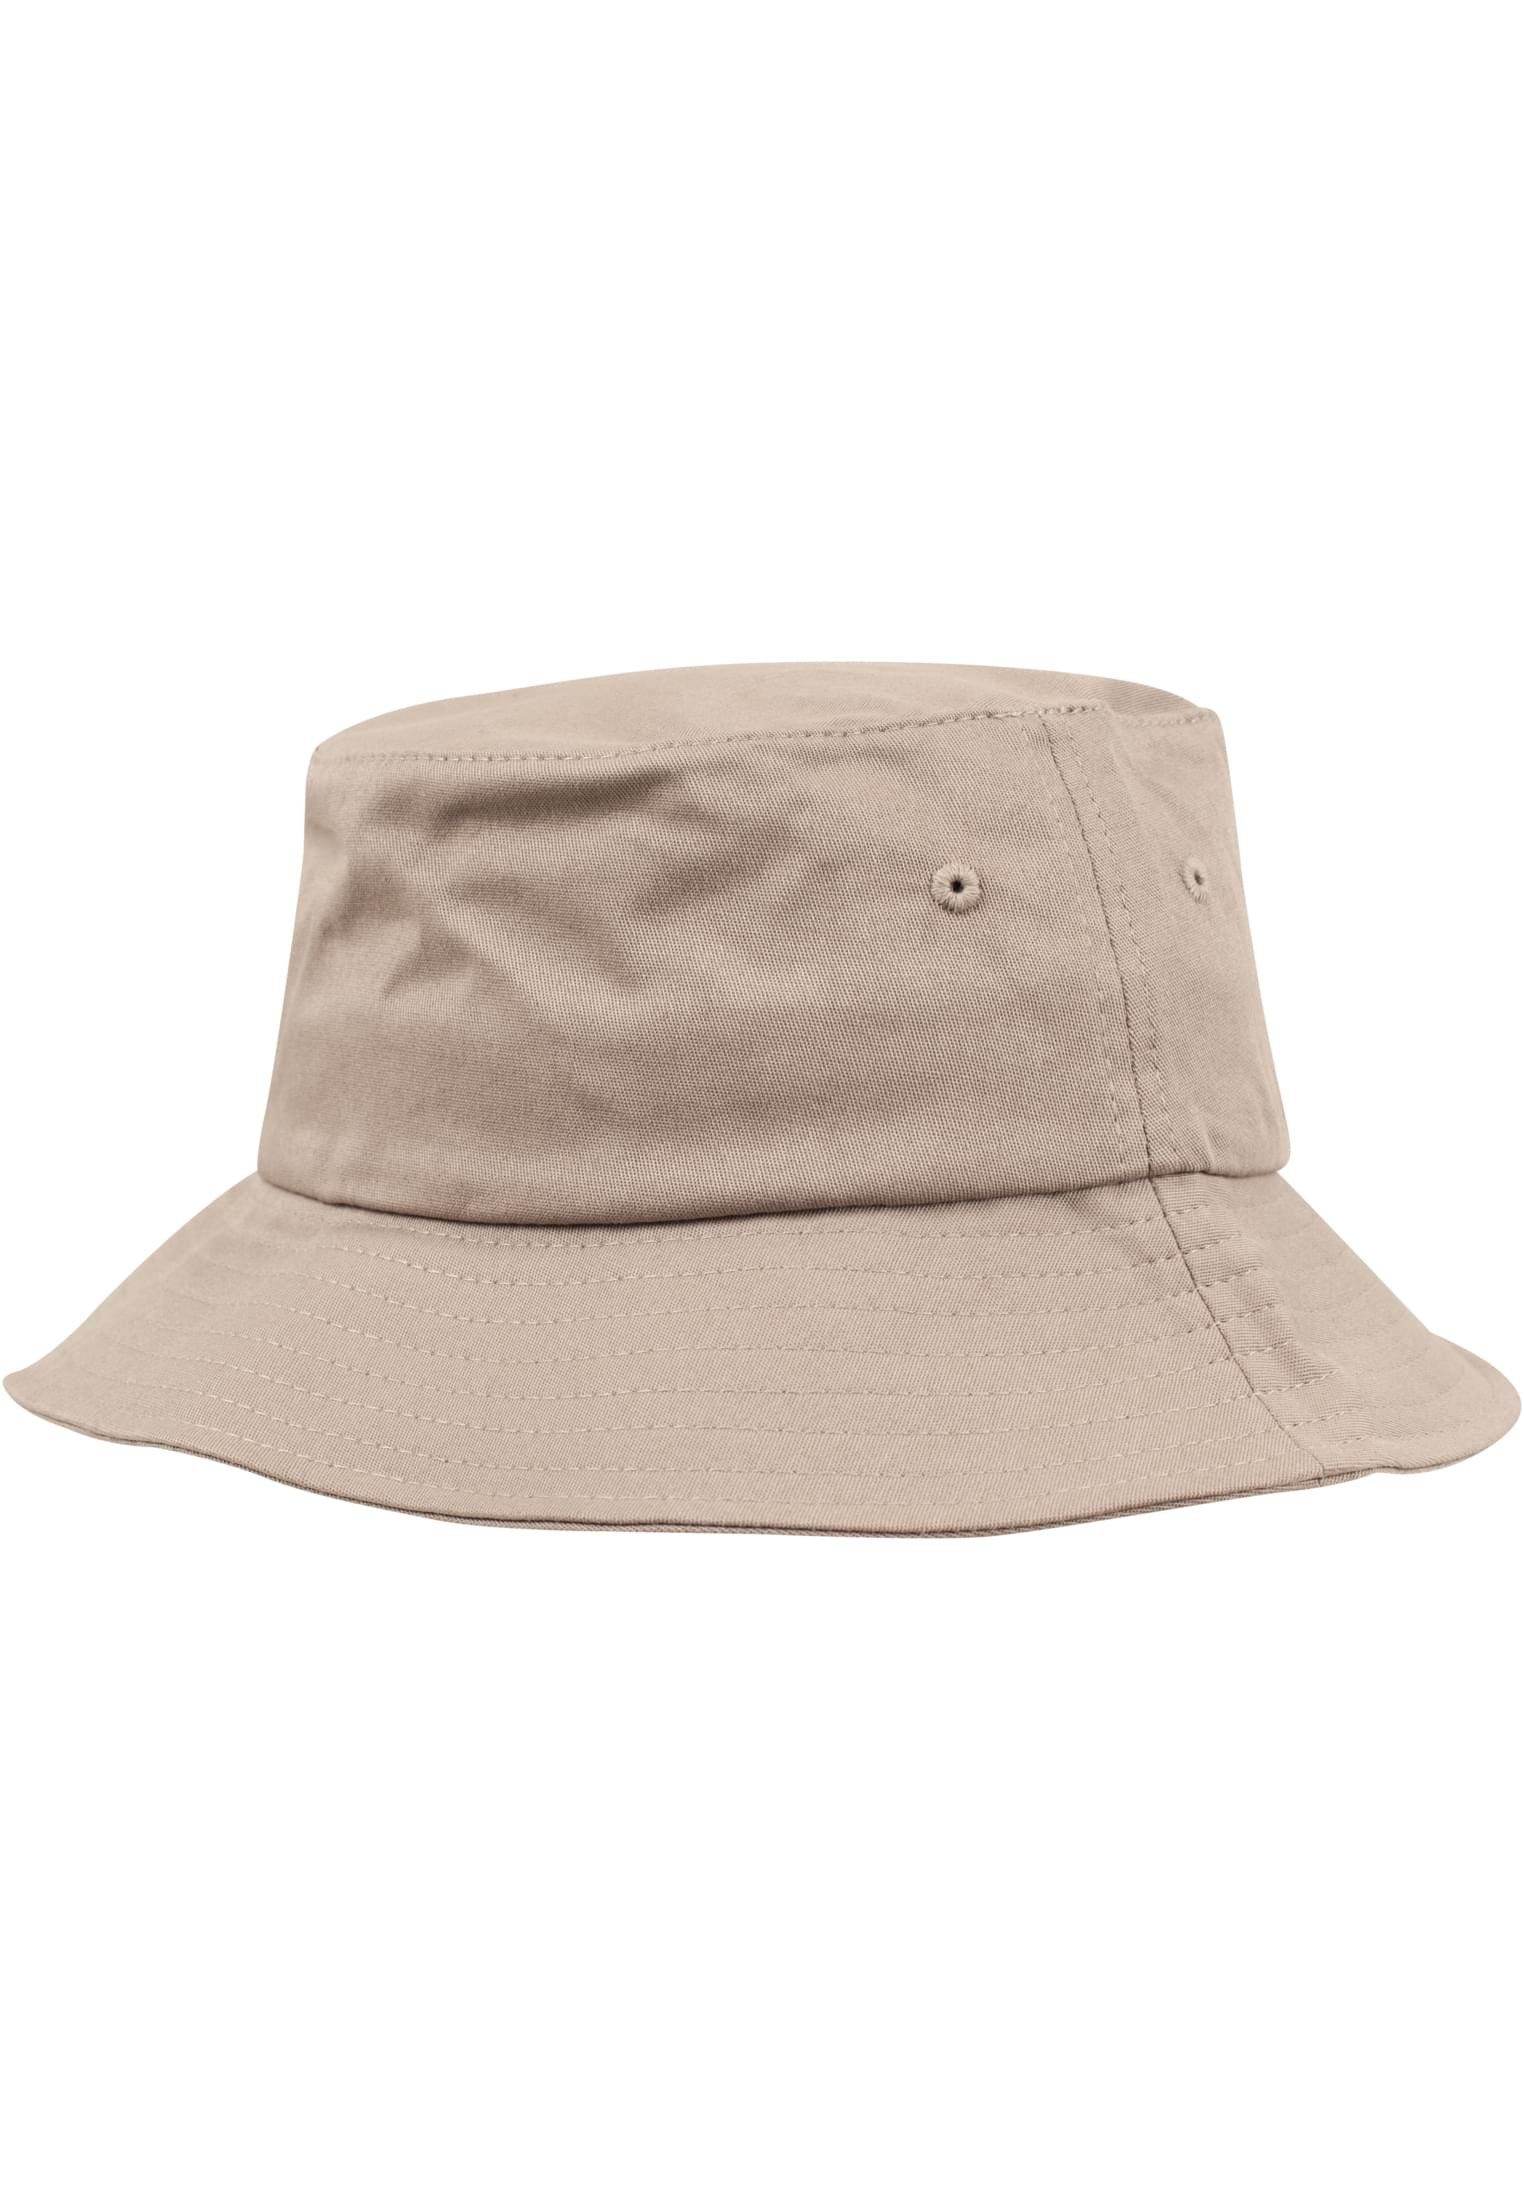 Cap khaki Hat Twill Flexfit Flexfit Cotton Flex Accessoires Bucket